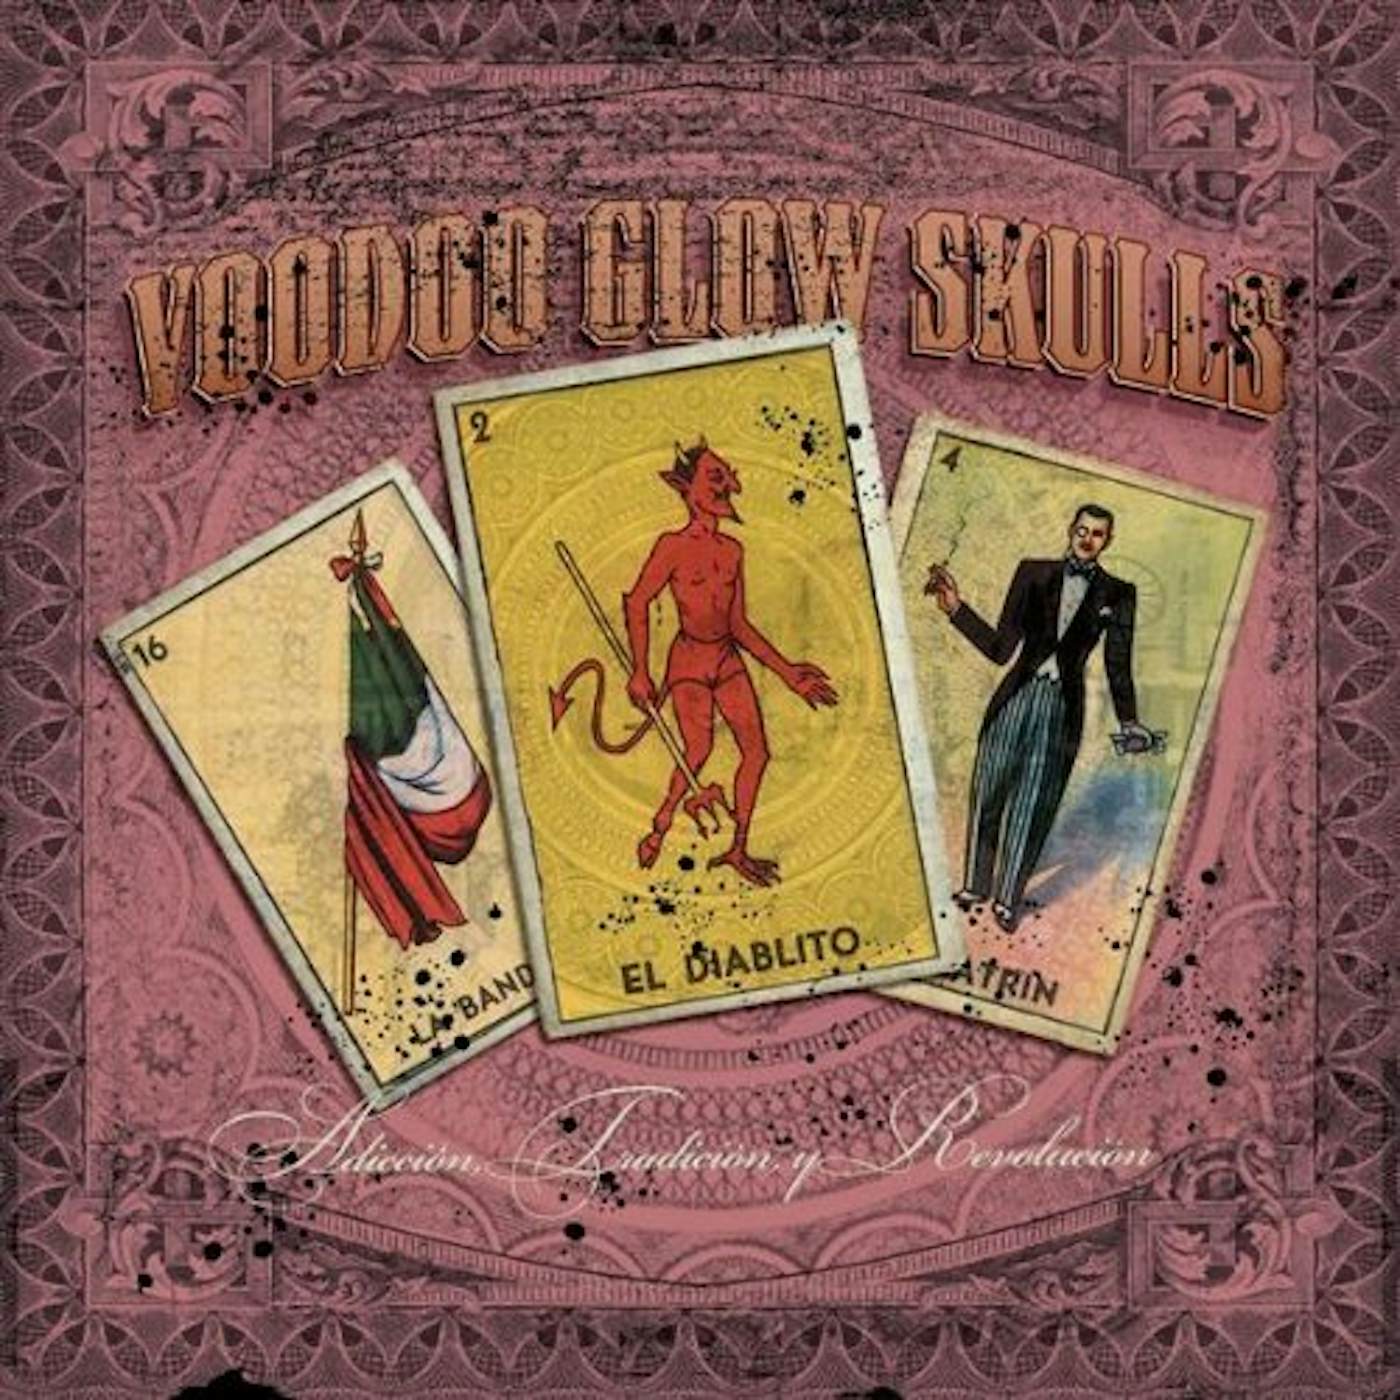 Voodoo Glow Skulls ADICCION TRADICION Y REVOLUCION CD